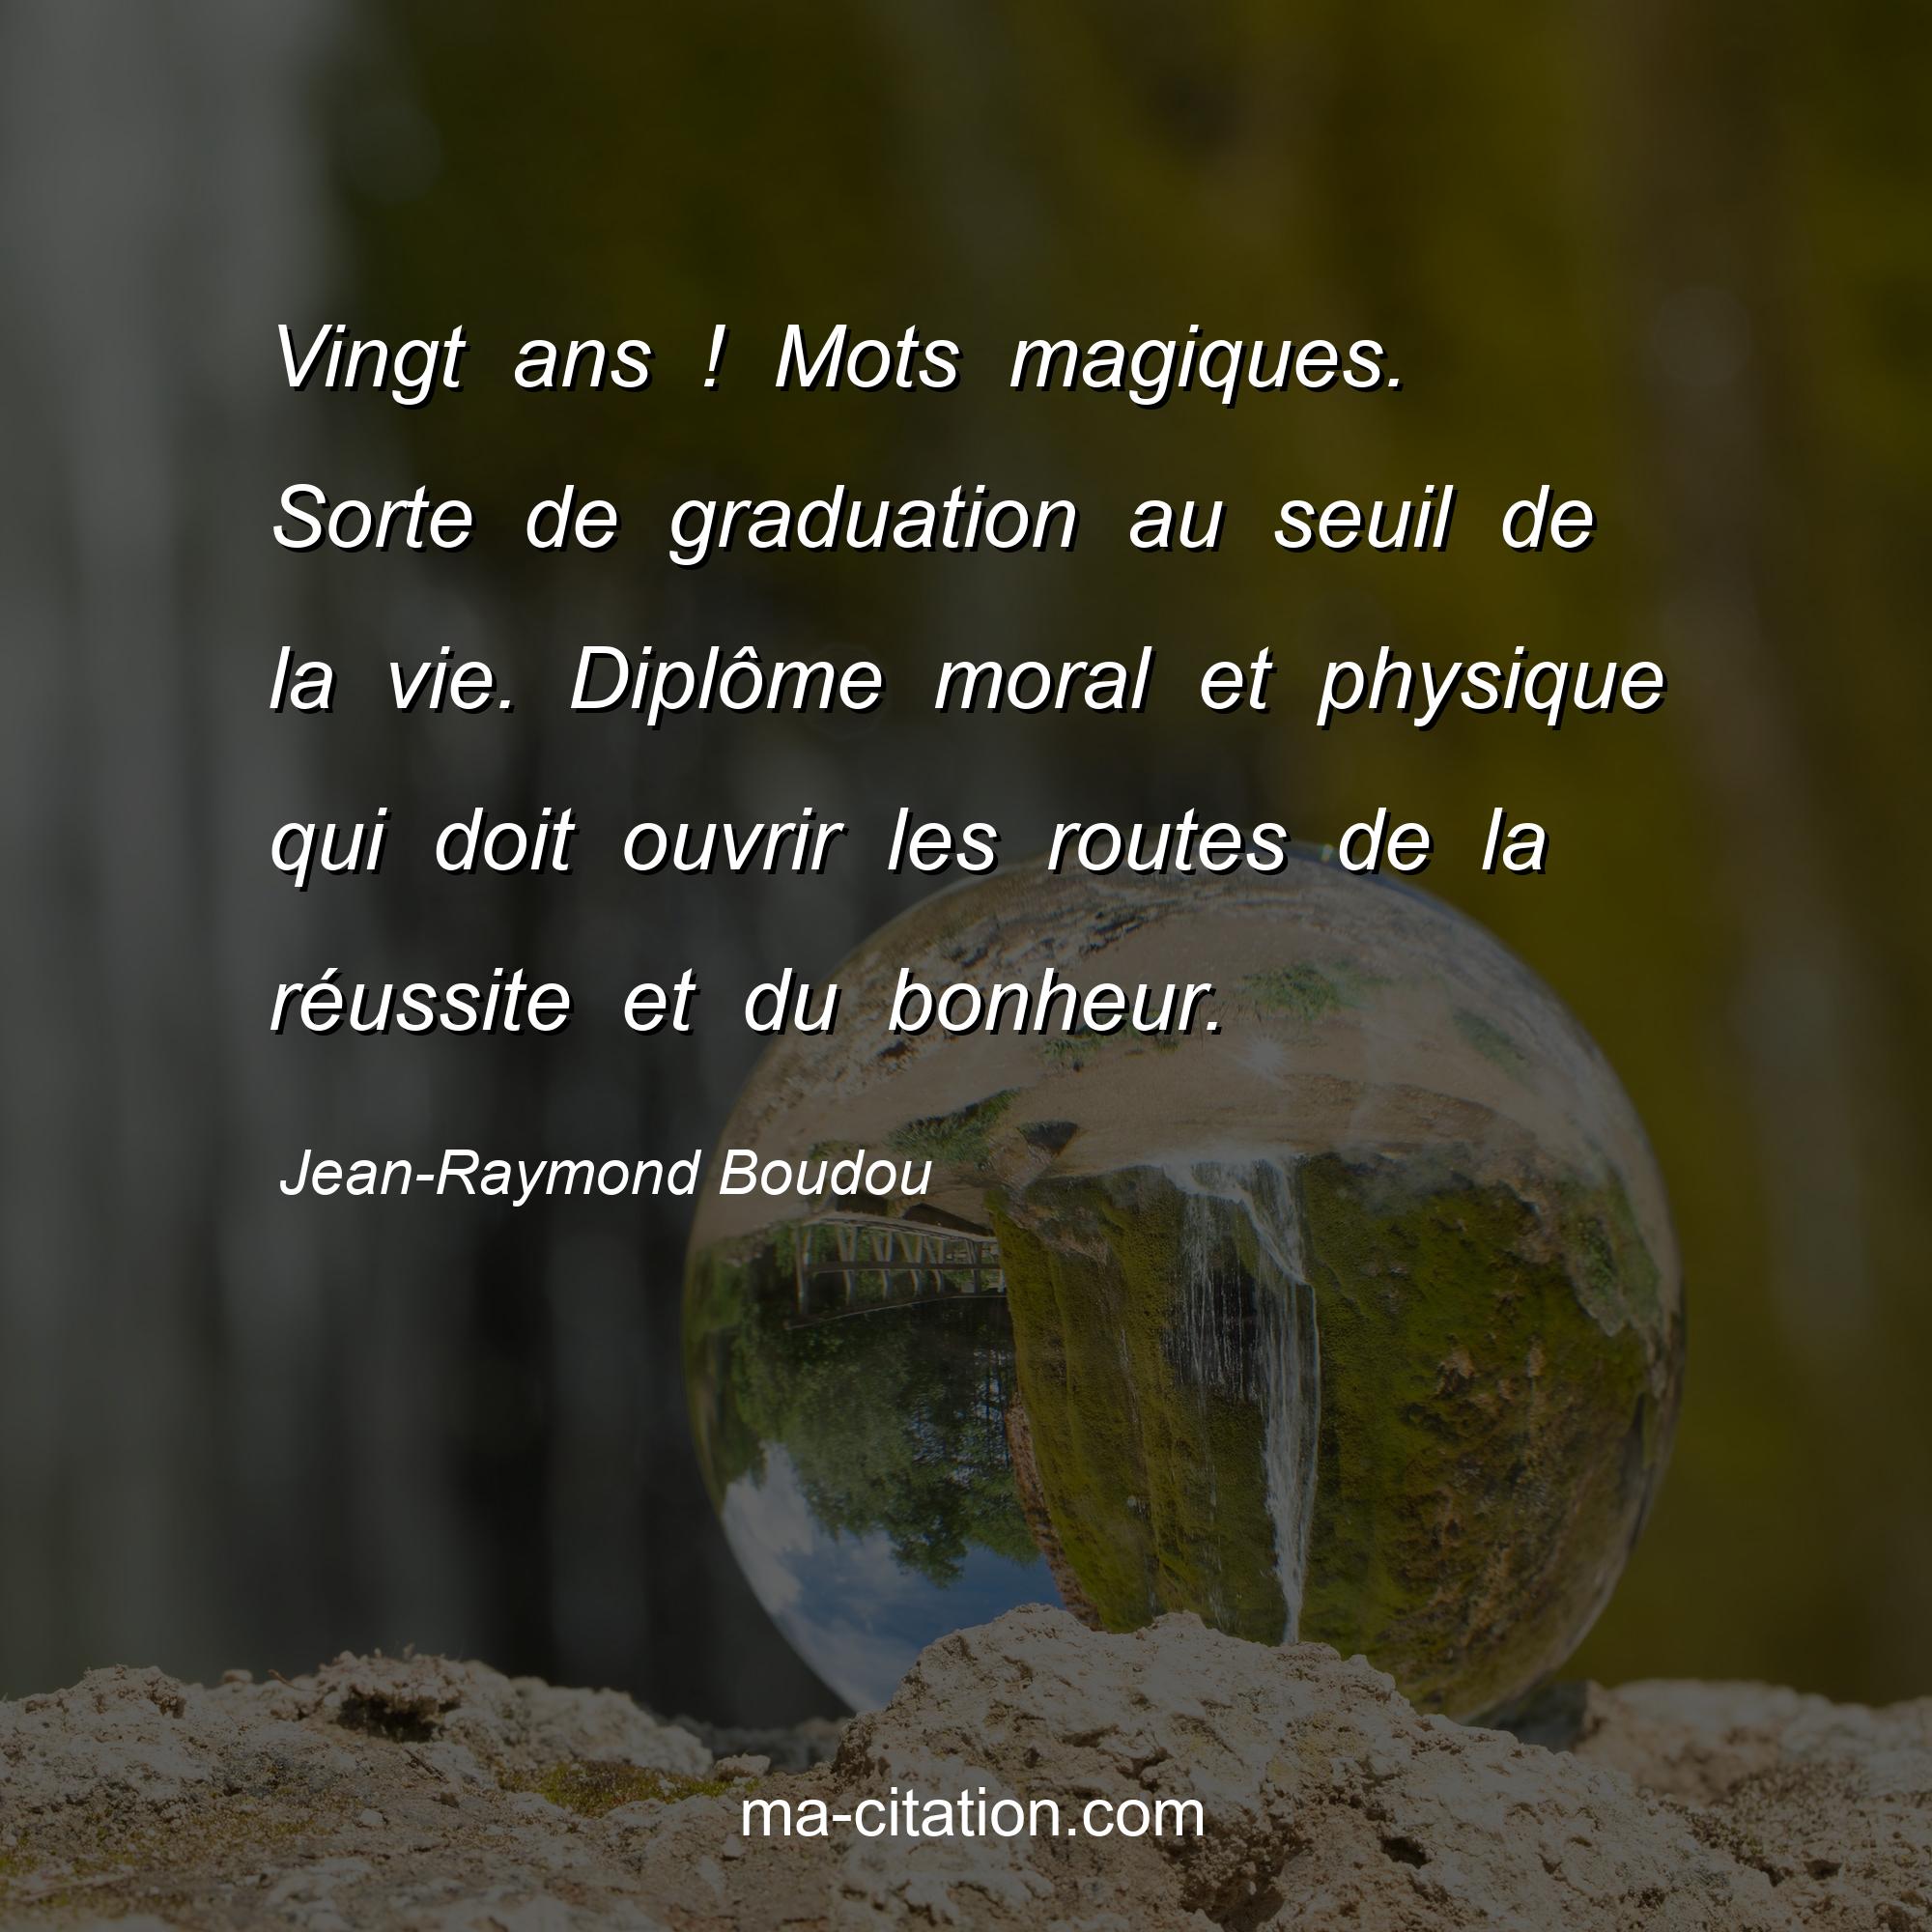 Jean-Raymond Boudou : Vingt ans ! Mots magiques. Sorte de graduation au seuil de la vie. Diplôme moral et physique qui doit ouvrir les routes de la réussite et du bonheur.